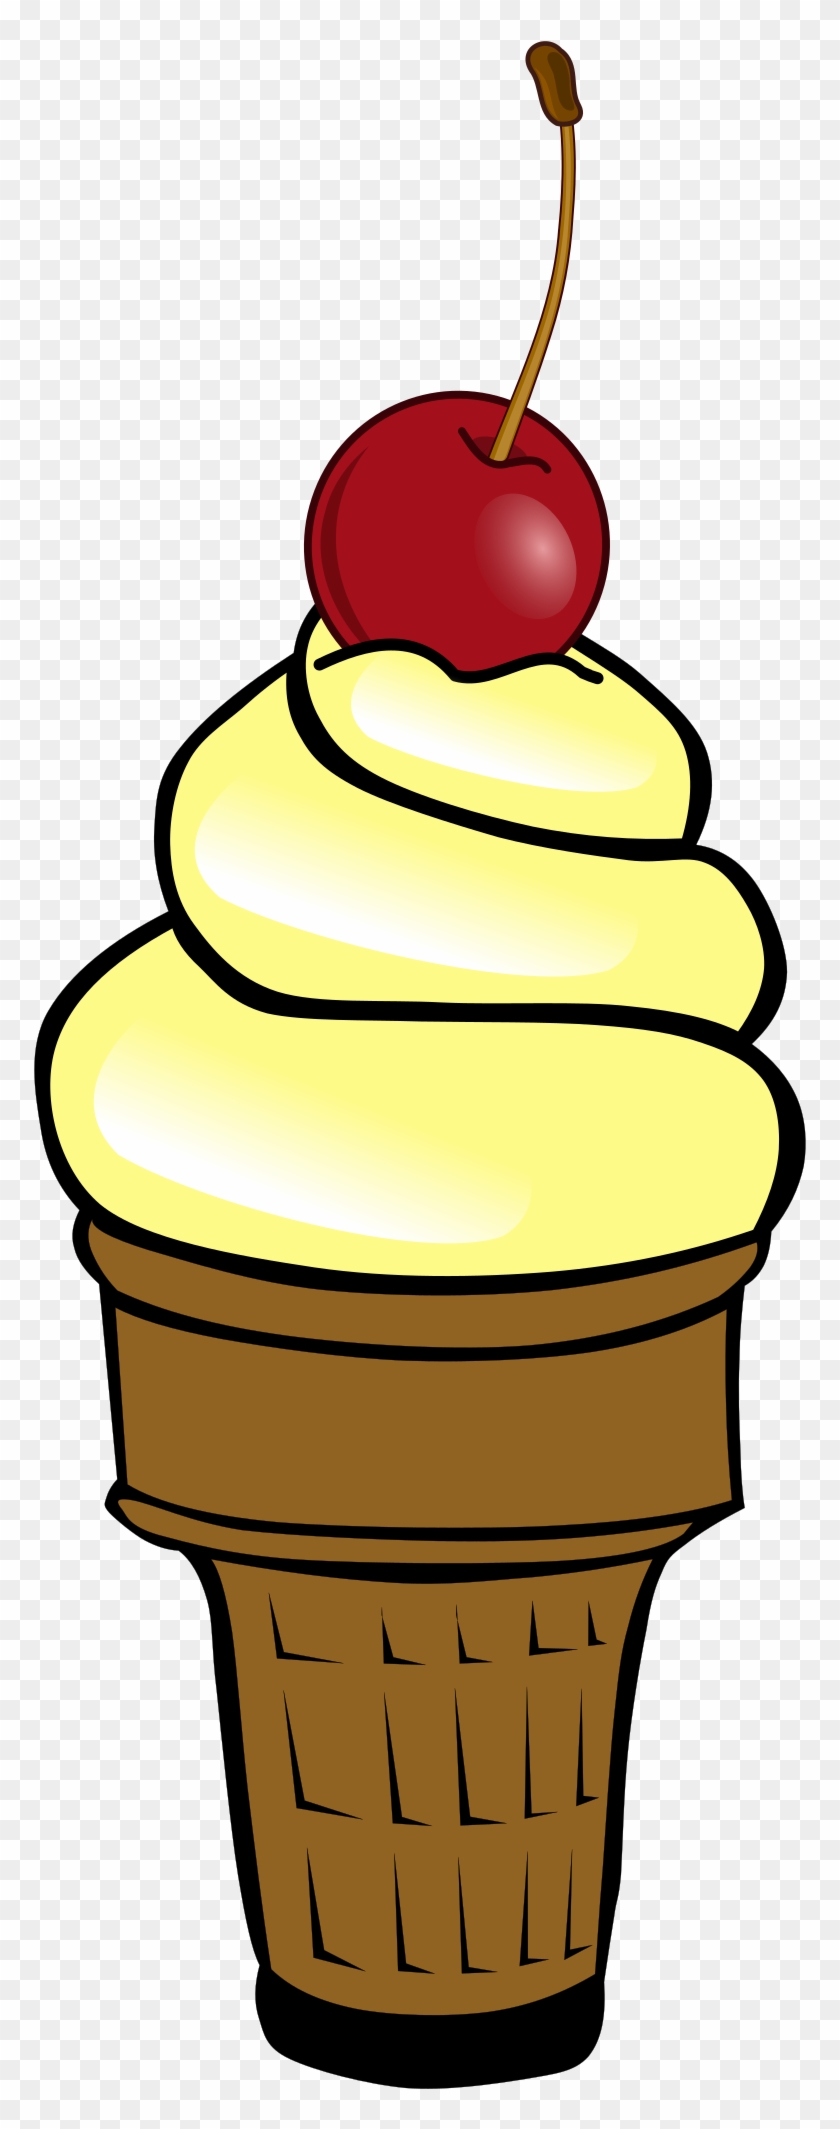 Ice Cream With Cherry - Ice Cream With Cherry Clipart #51645